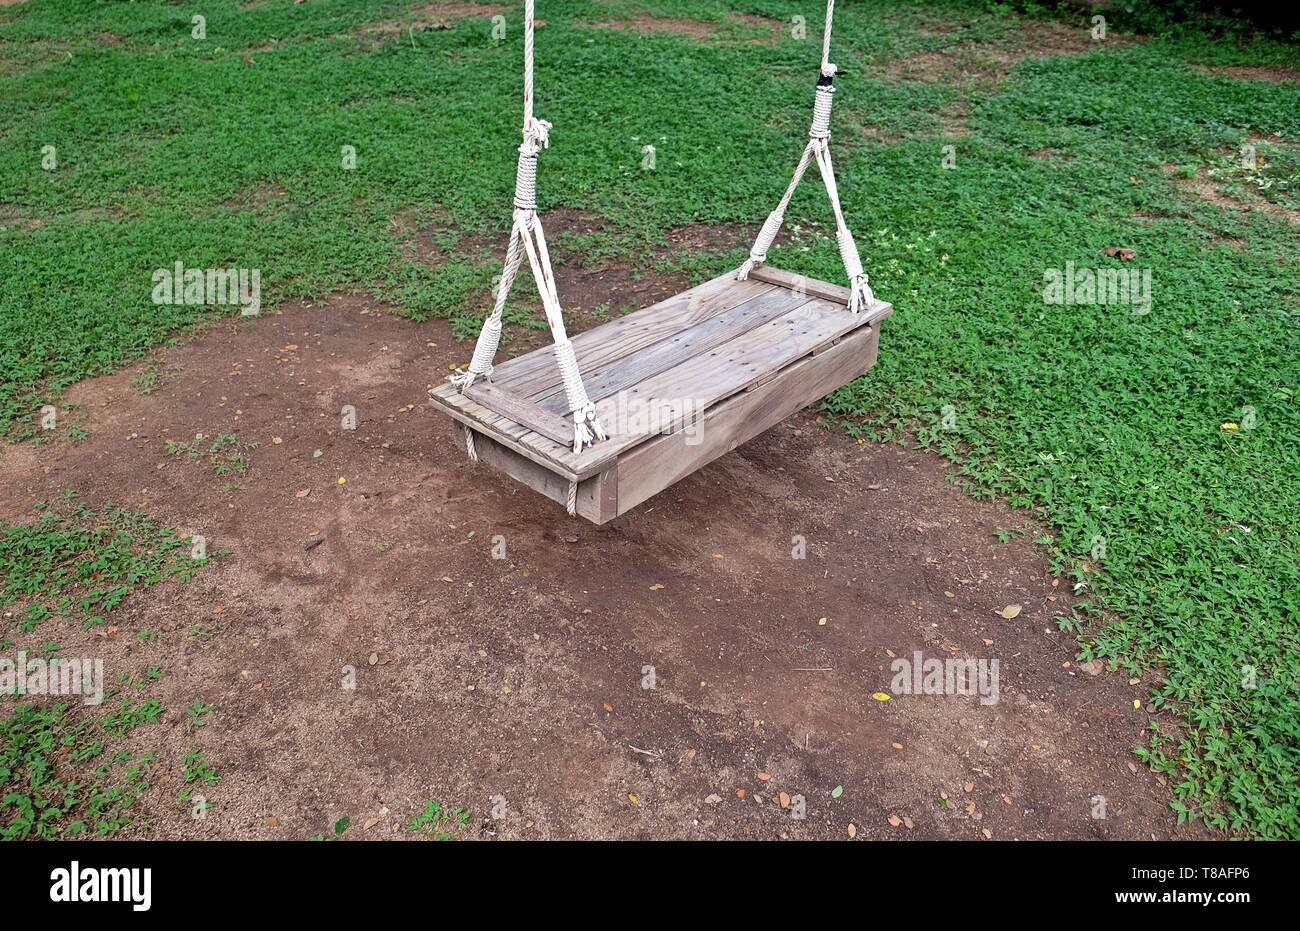 Hängende Seil Stuhl Swing hängen mit in den Garten. Wenn Sie sich entspannen wollen, Sie sitzen können und schwingen Sie müssen bequem sein. Stockfoto